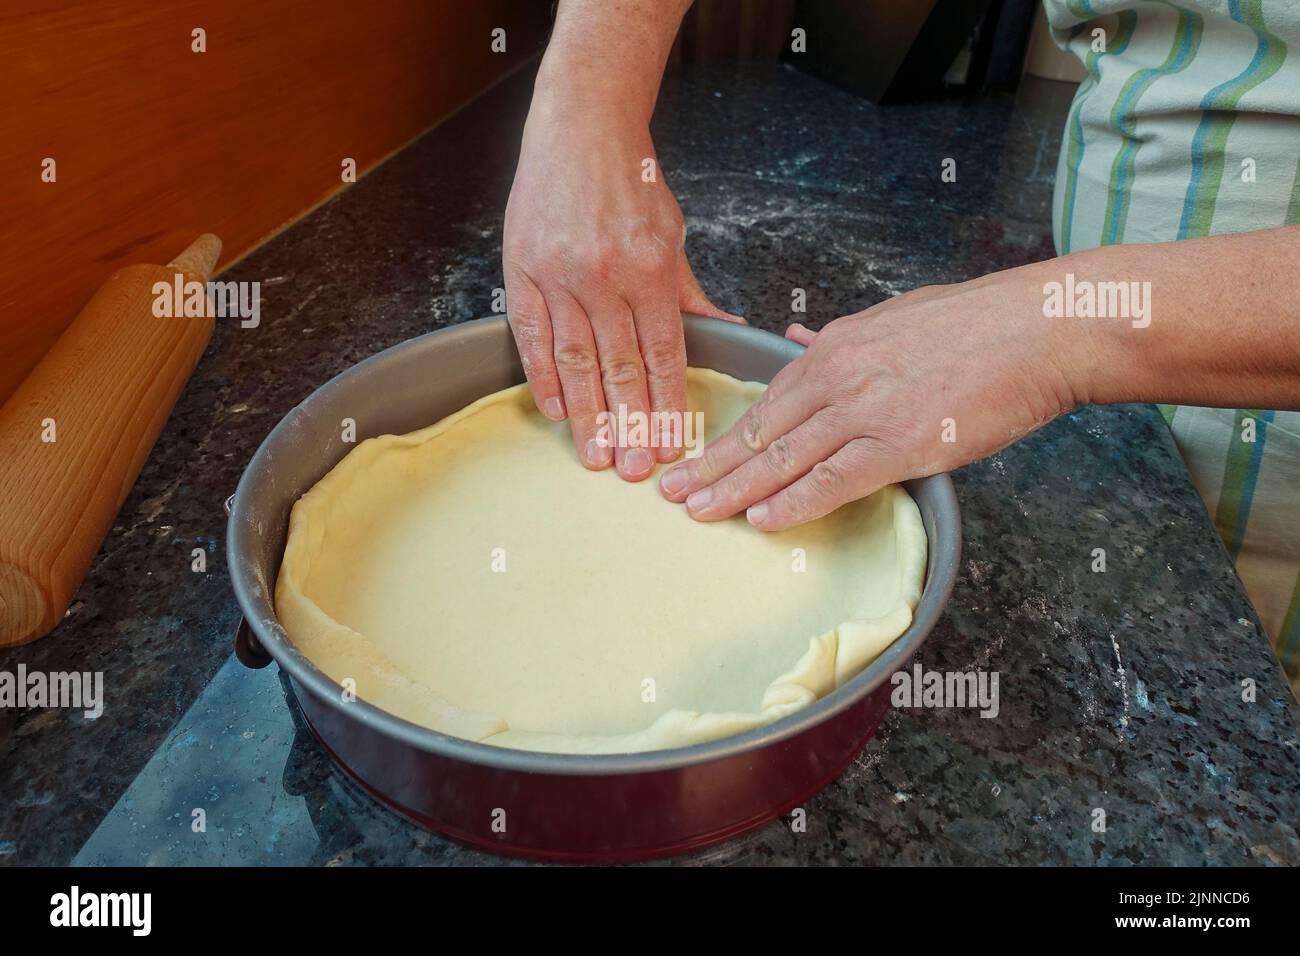 Cucina sveva, preparazione della torta di patate Haertsfeld, pressare la pasta cagliata nella teglia da forno, teglia a molle, vassoio per torte, spilla, torta salata, cuocere in forno Foto Stock